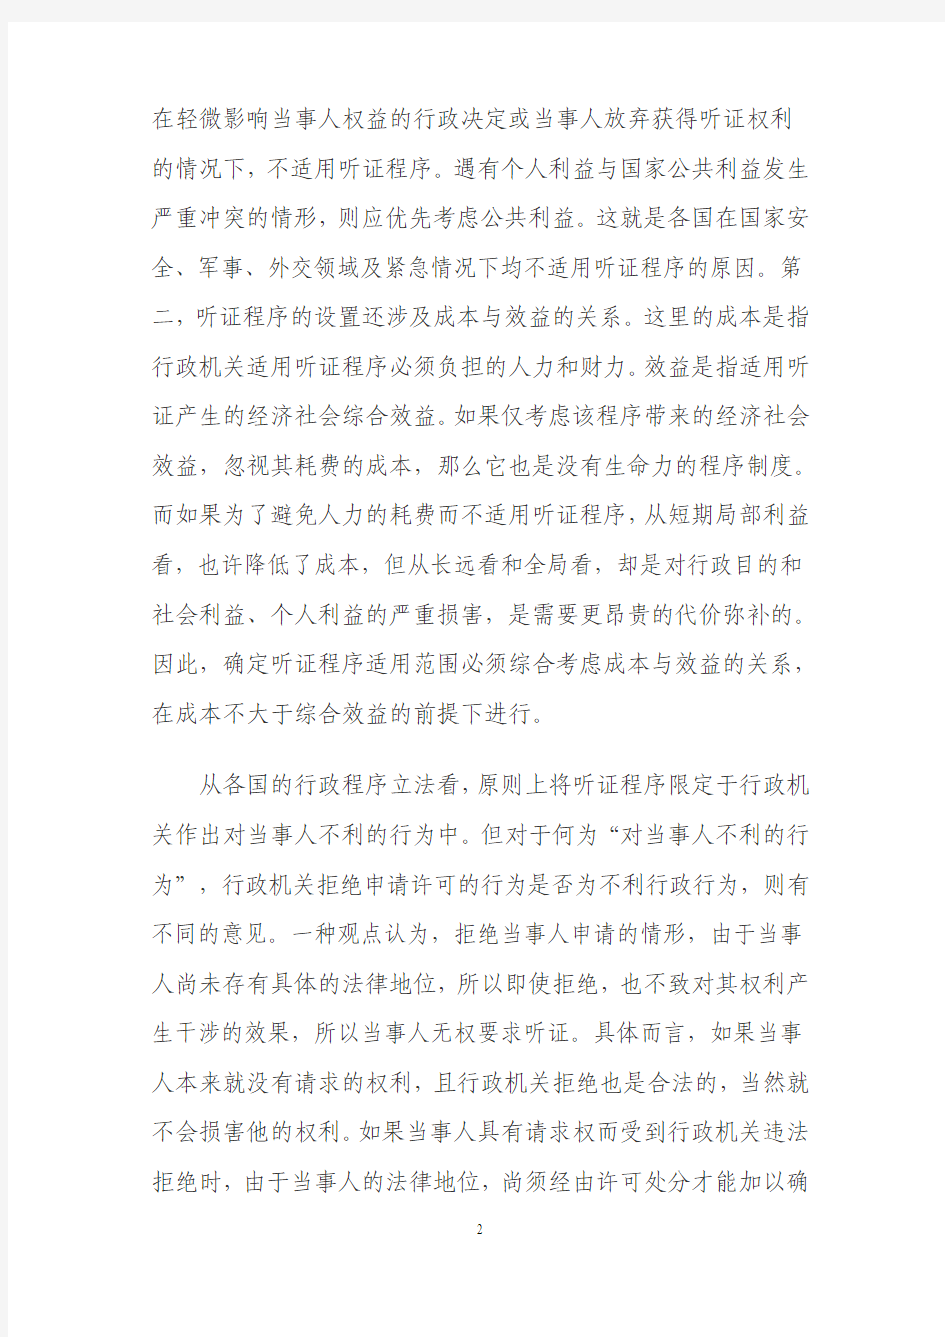 新建 M解读《中华人民共和国行政许可法》第四十六条